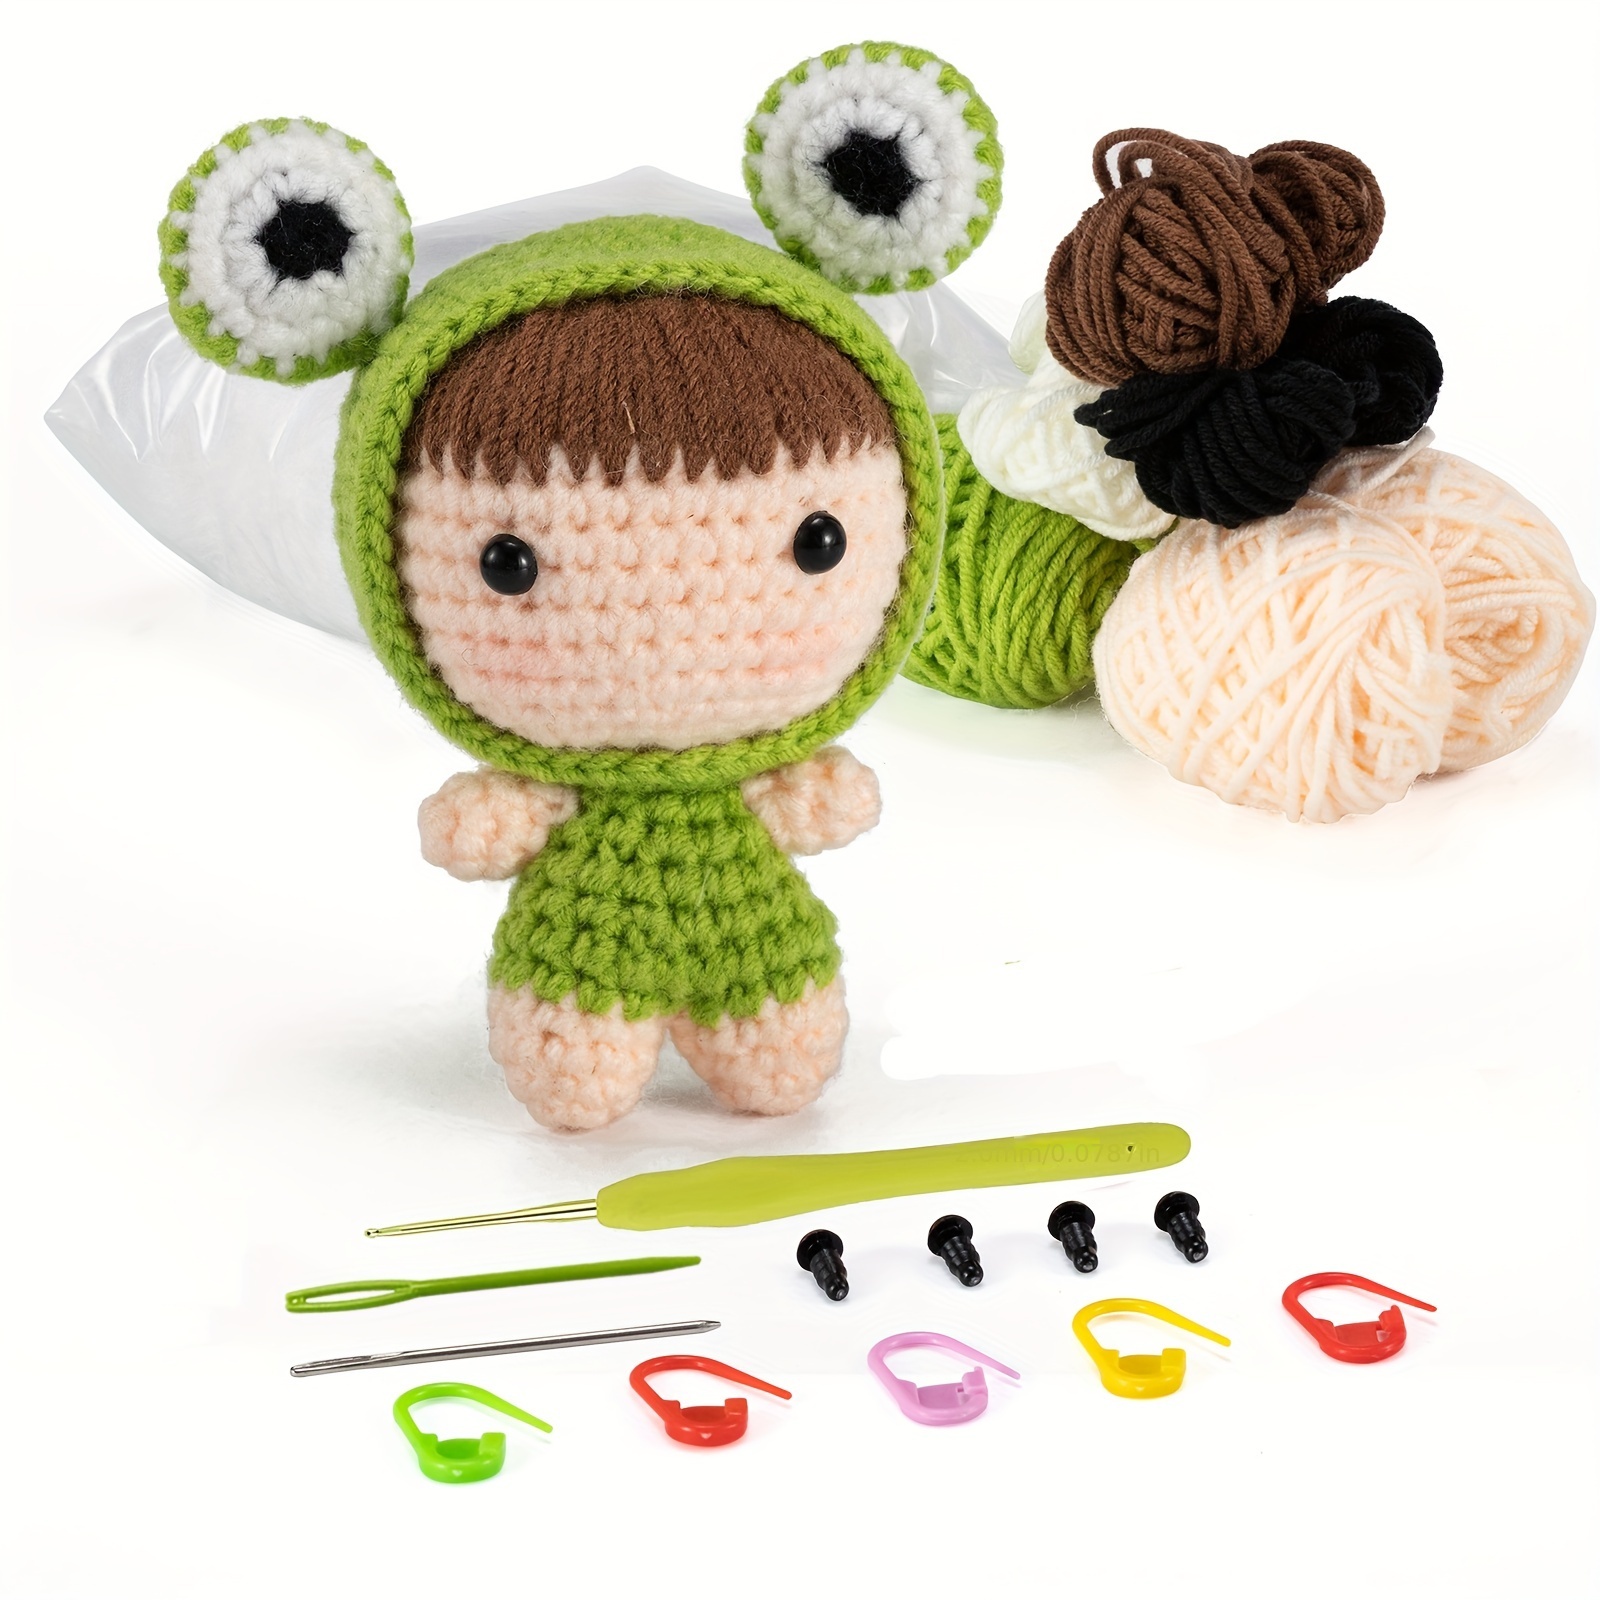 New 4Pcs Crochet Kit for Beginners Complete Animal Crochet Knitting Kit  Adorable Doll Chick Frog Octopus Starter Pack DIY - AliExpress